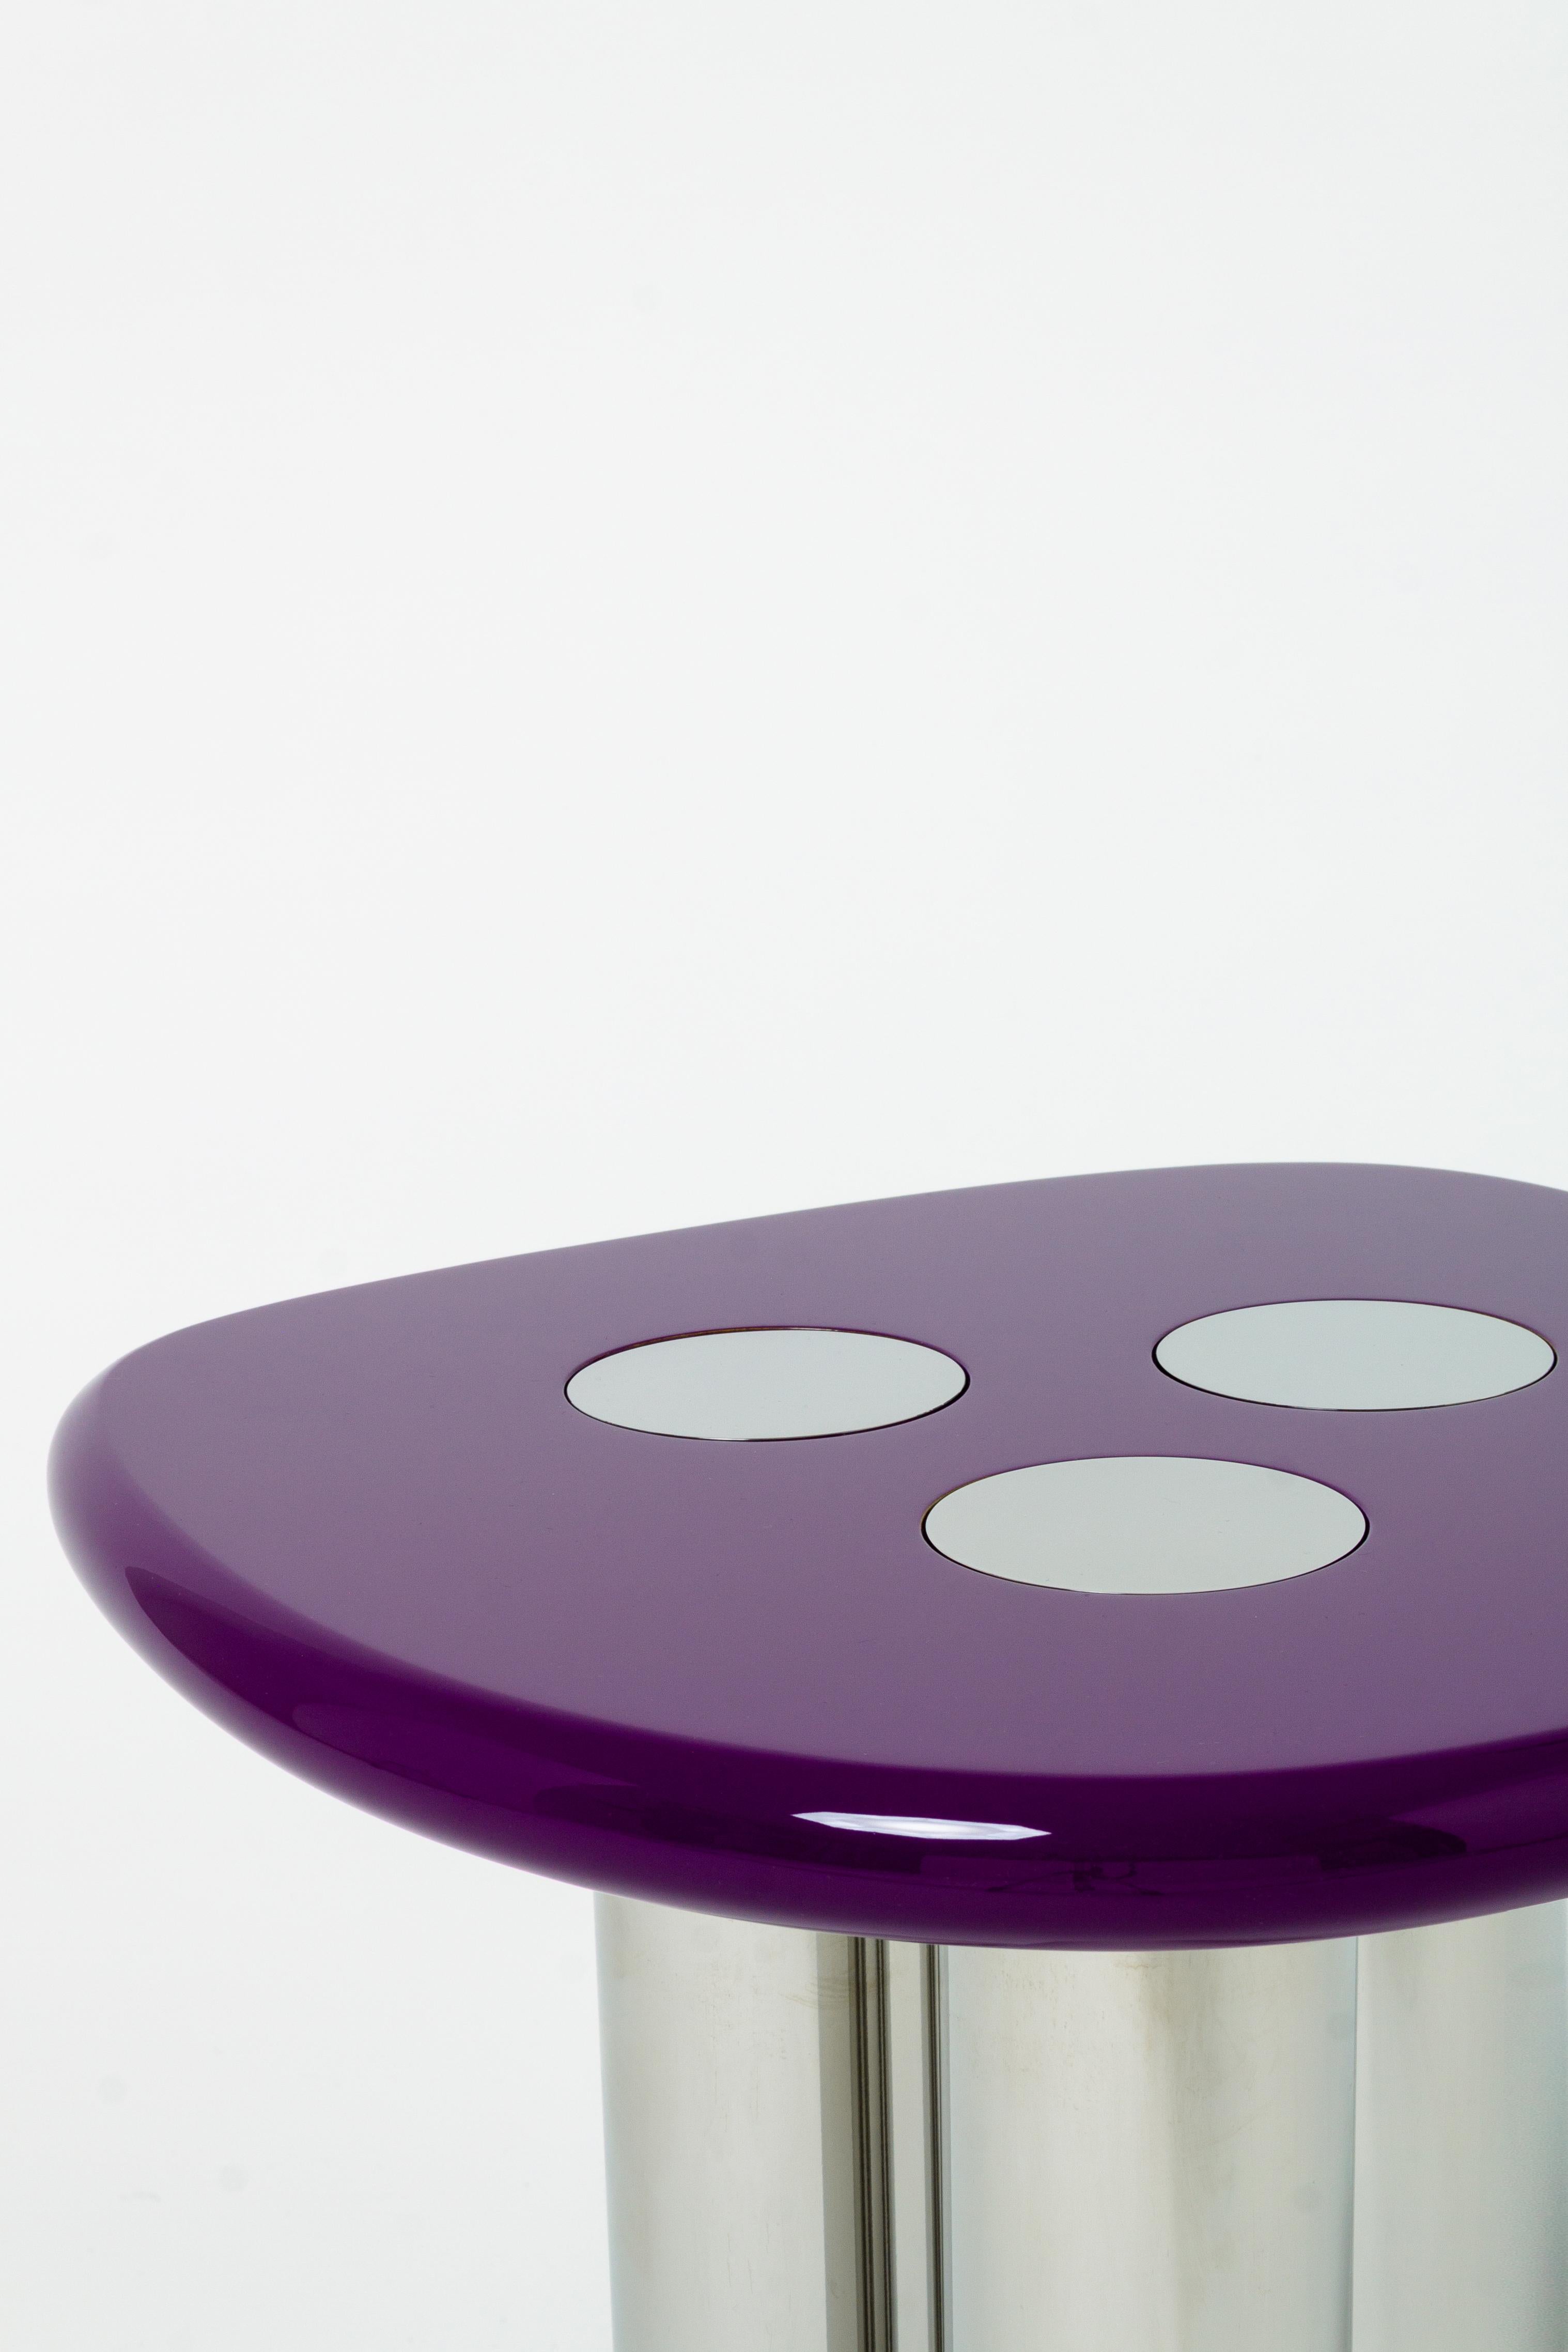 Cette table d'appoint de Reverso Studio représente une édition de pièces totalement personnalisées et fabriquées à la main en Italie avec les plus hauts standards de qualité de l'artisanat et des matériaux. 
La table d'appoint est fabriquée en acier